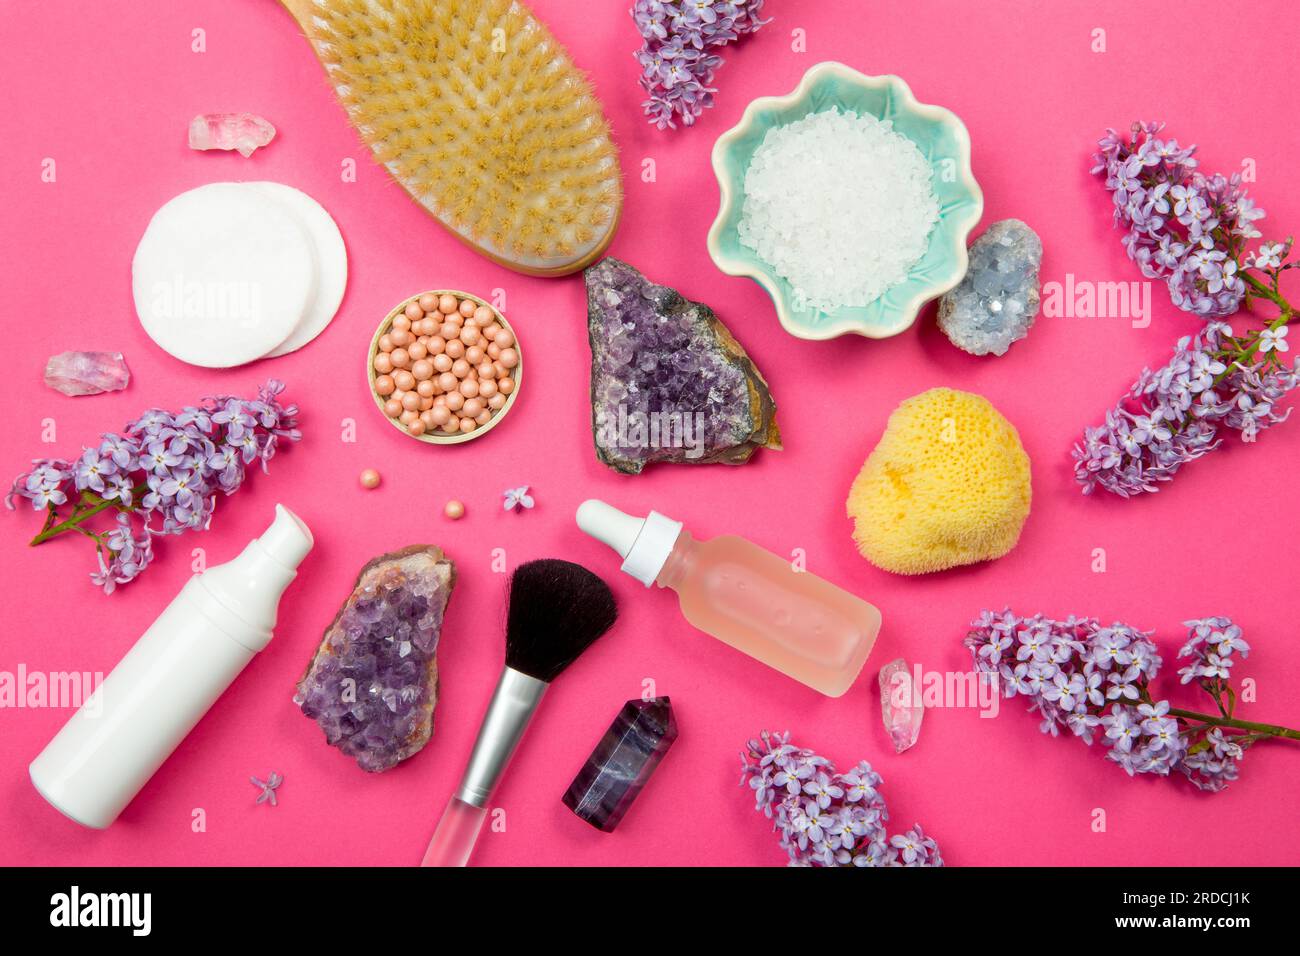 Von oben sehen Sie verschiedene Behälter mit weißen Kosmetik- und Schönheitsprodukten mit Fliederblüten (Syringa) und halbkostbaren Amethyst-Kristallen. Stockfoto